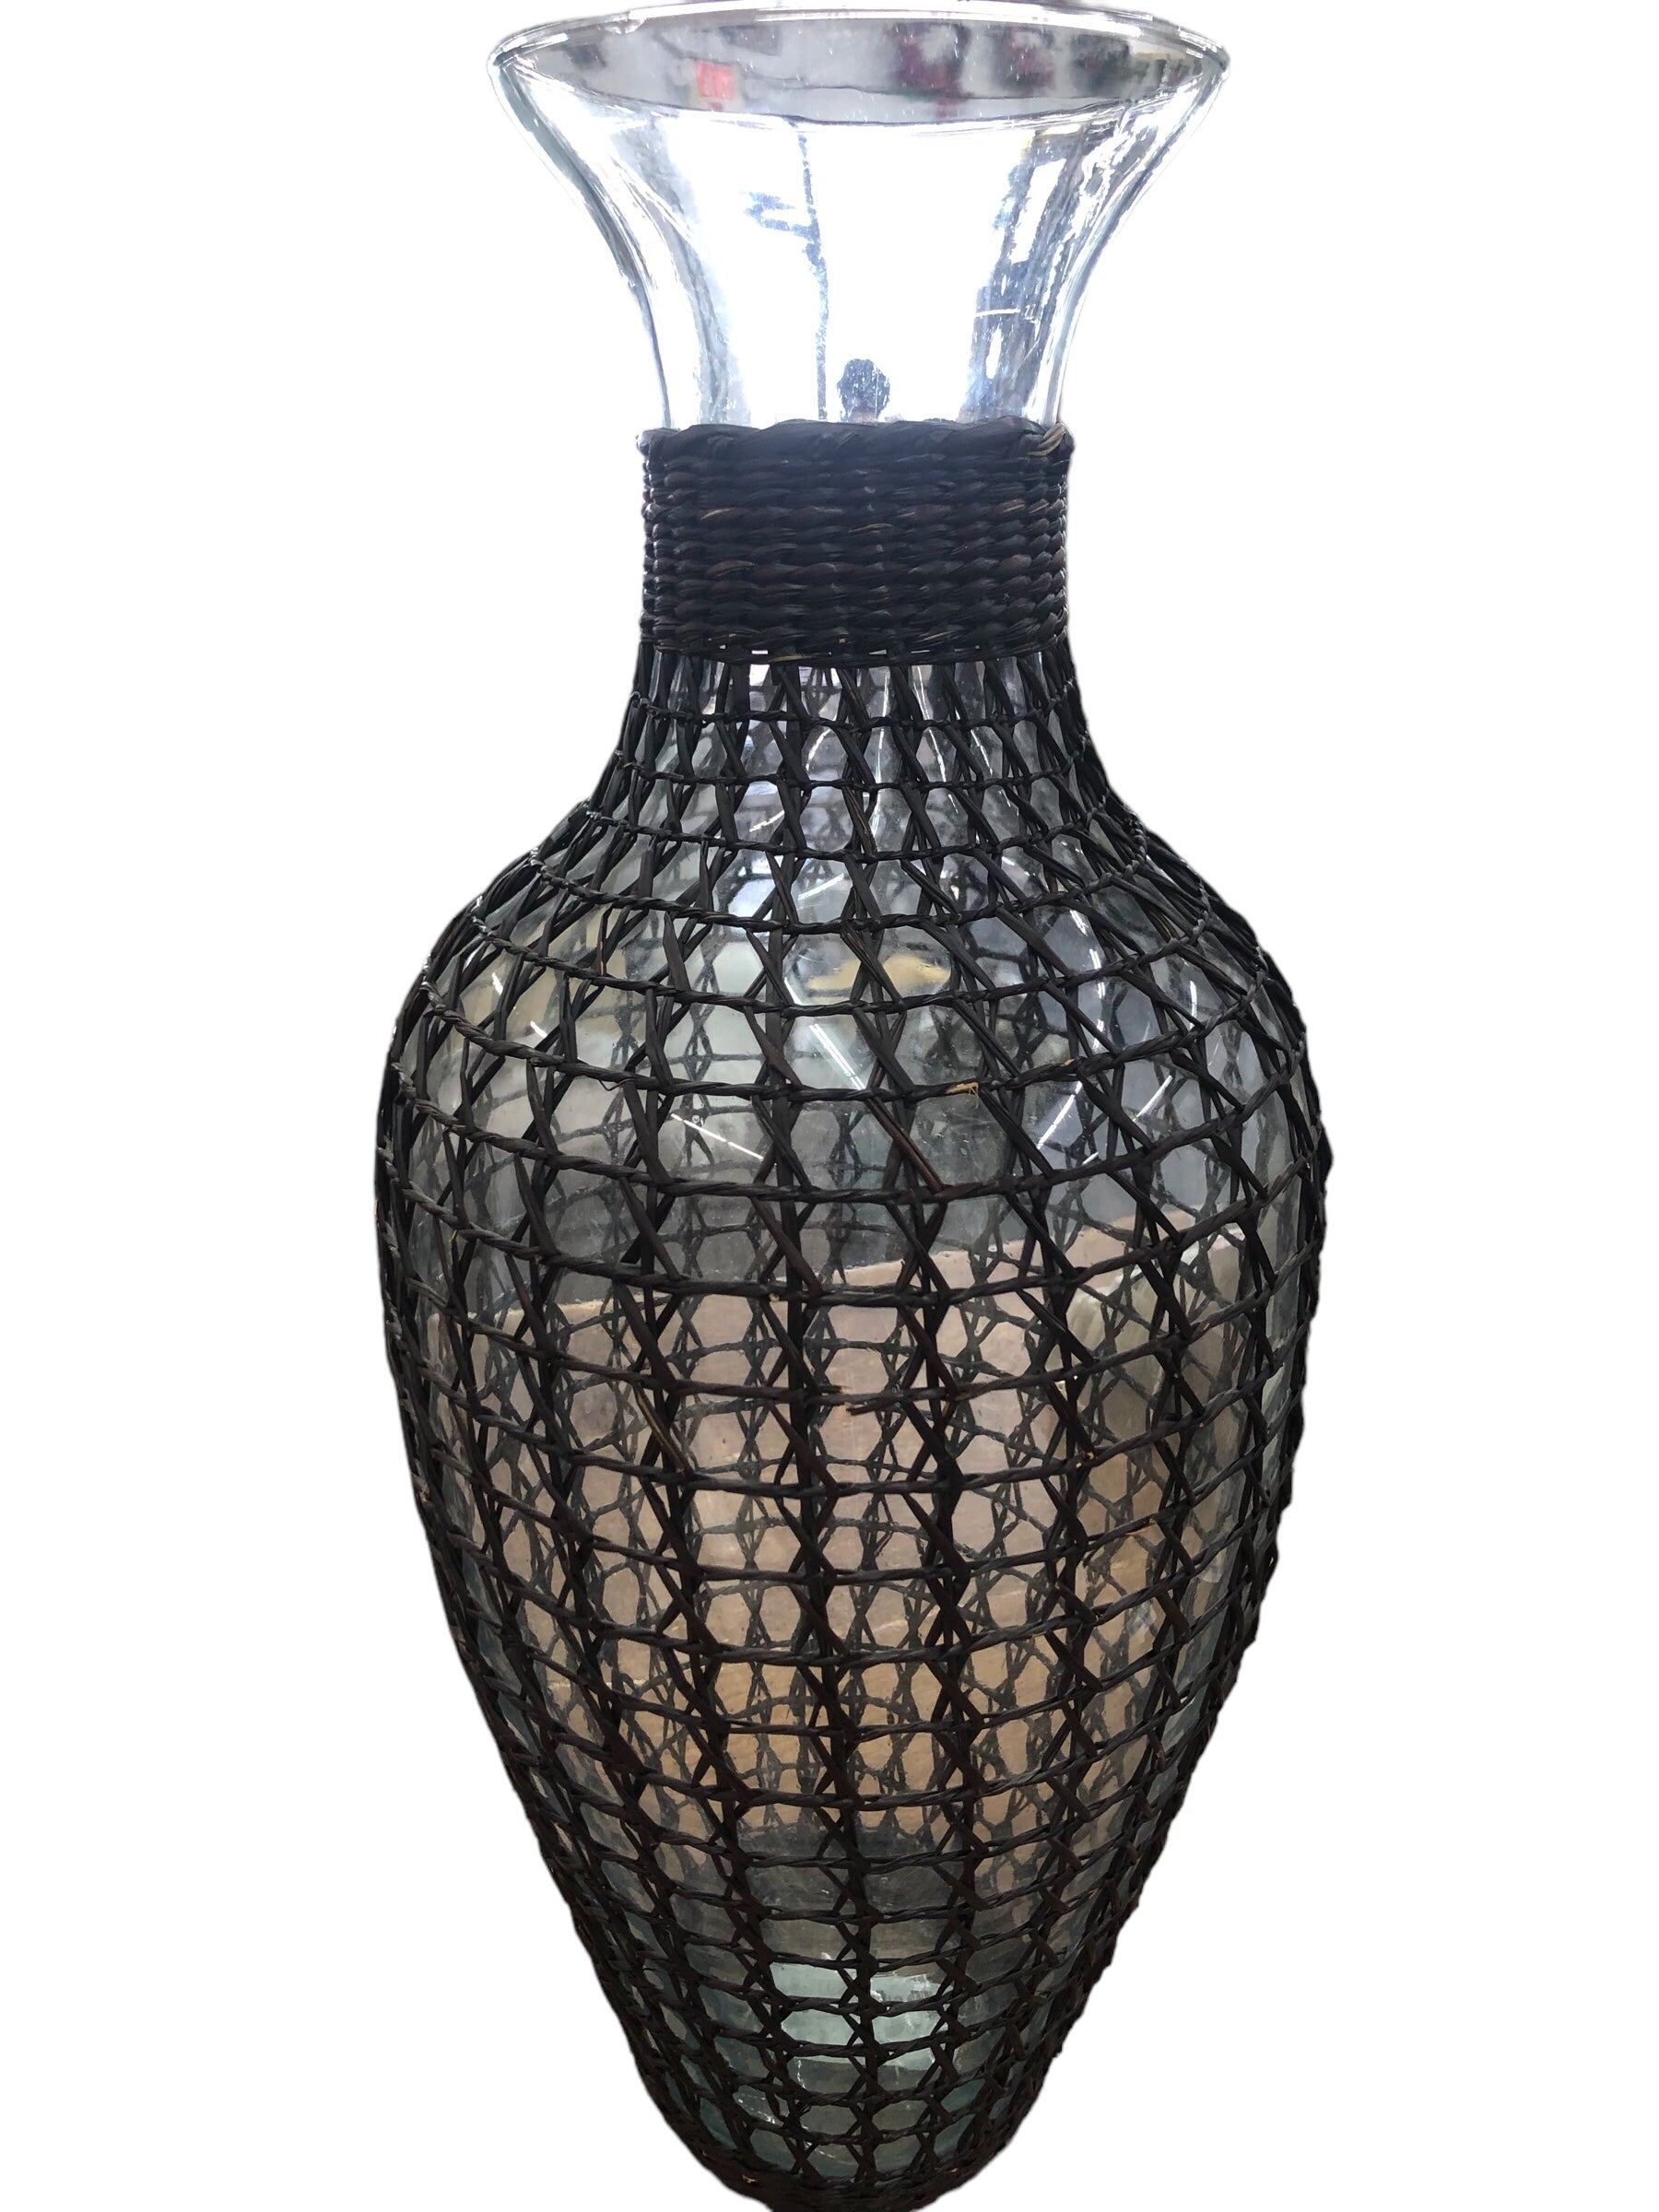 Vase with Wicker Sleeve